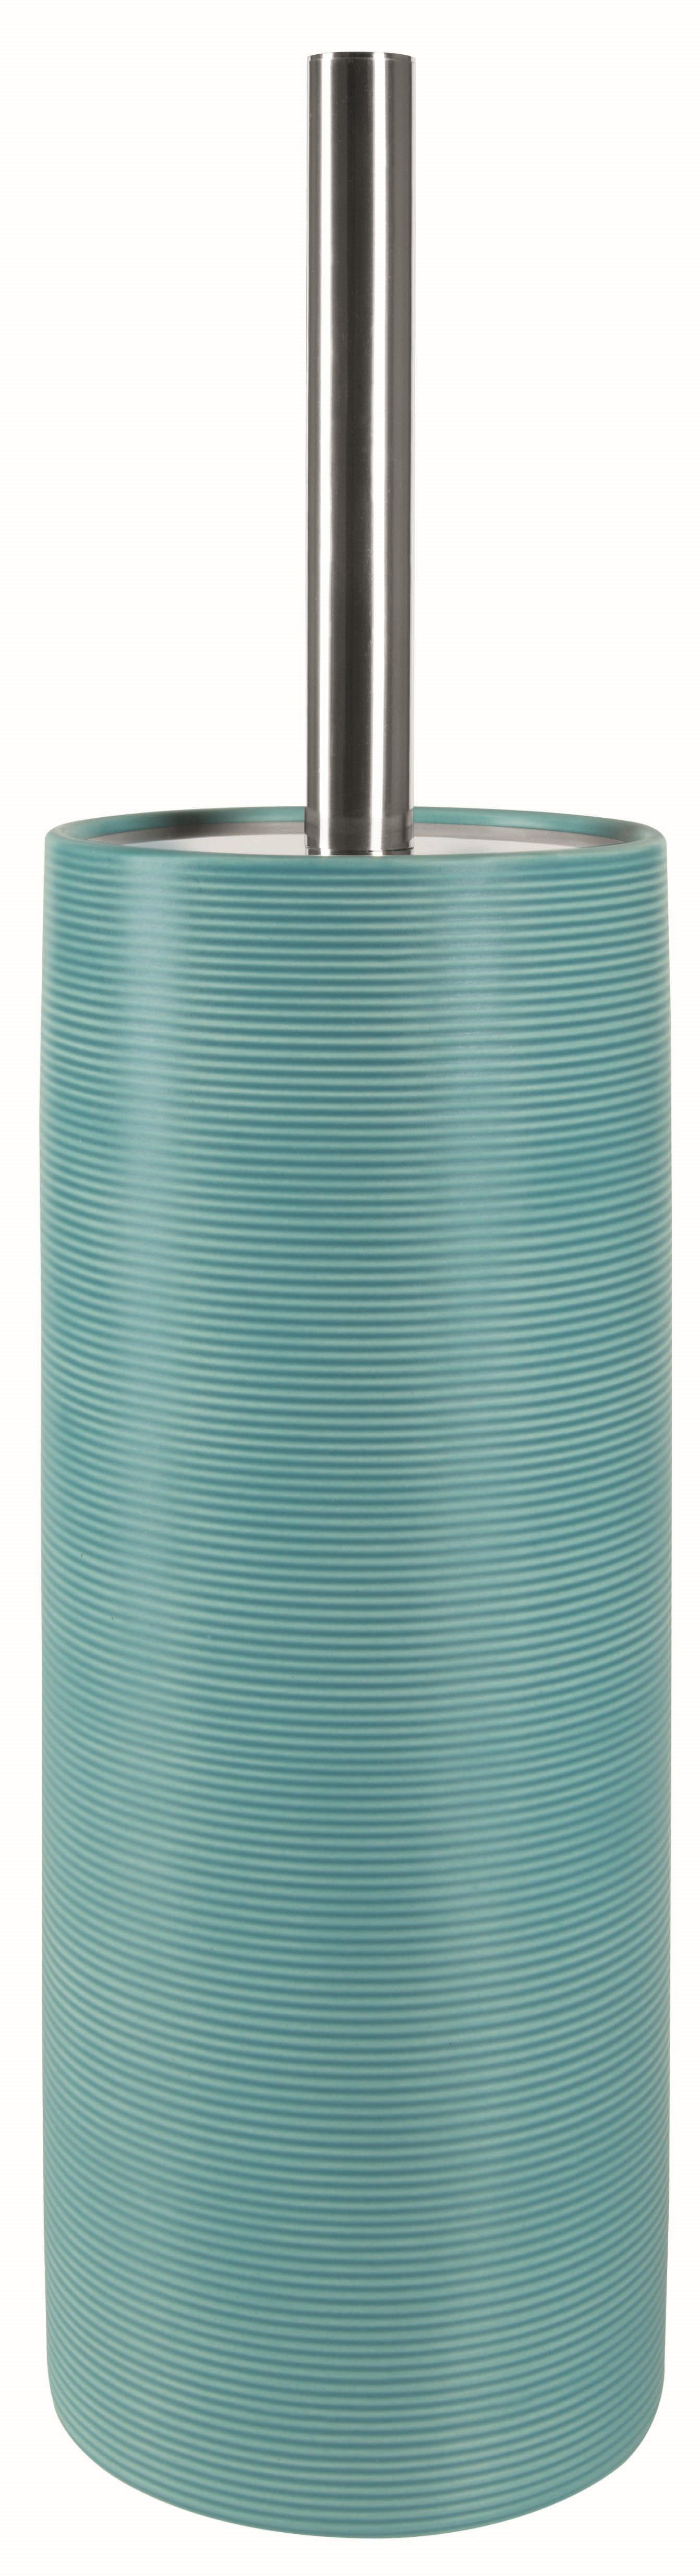 spirella Toilettenpapierhalter WC-Bürste TUBE RIBBED, Toilettenbürste aus hochwertiger Keramik, mit Deckel, mit Rillenstruktur in 3D-Effekt, türkisblau